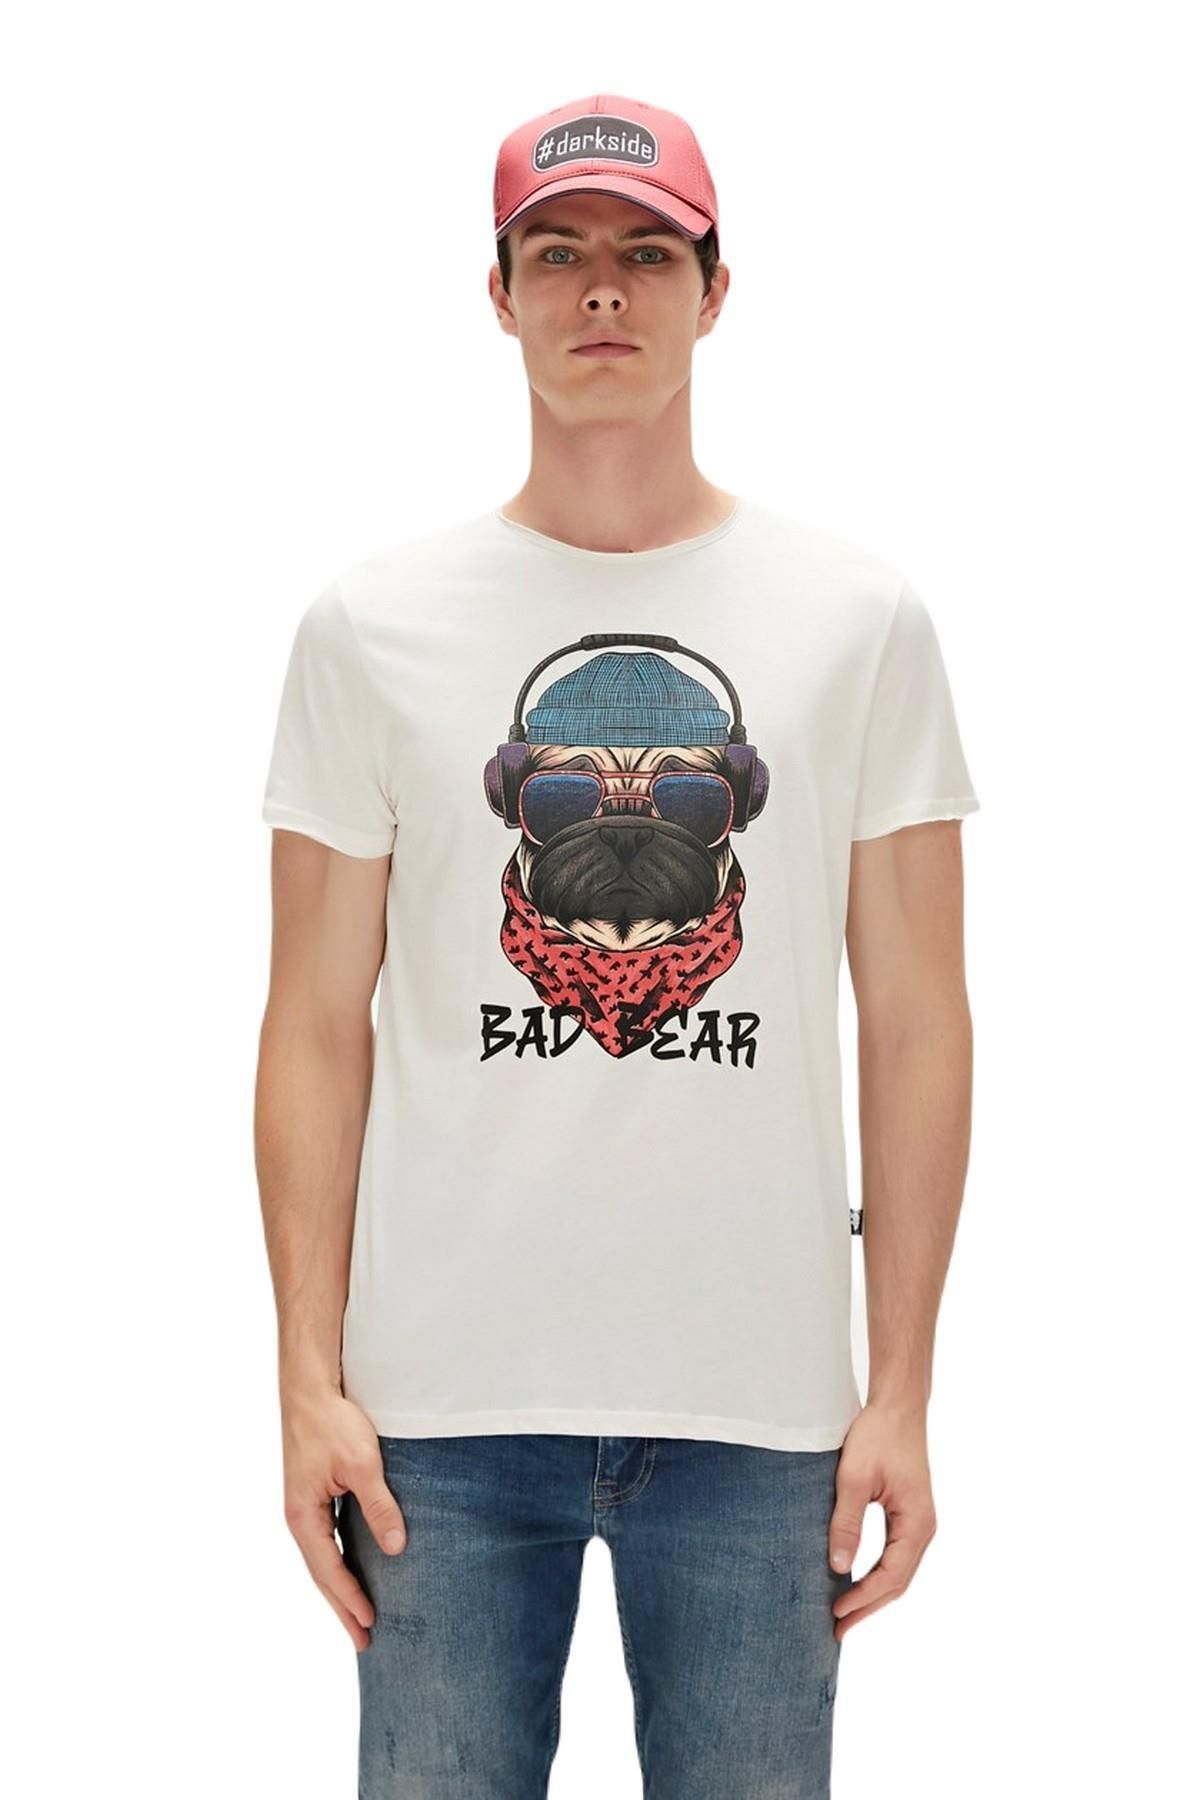 Bad Bear 23.01.07.010-c04 Reckless Erkek T-shirt